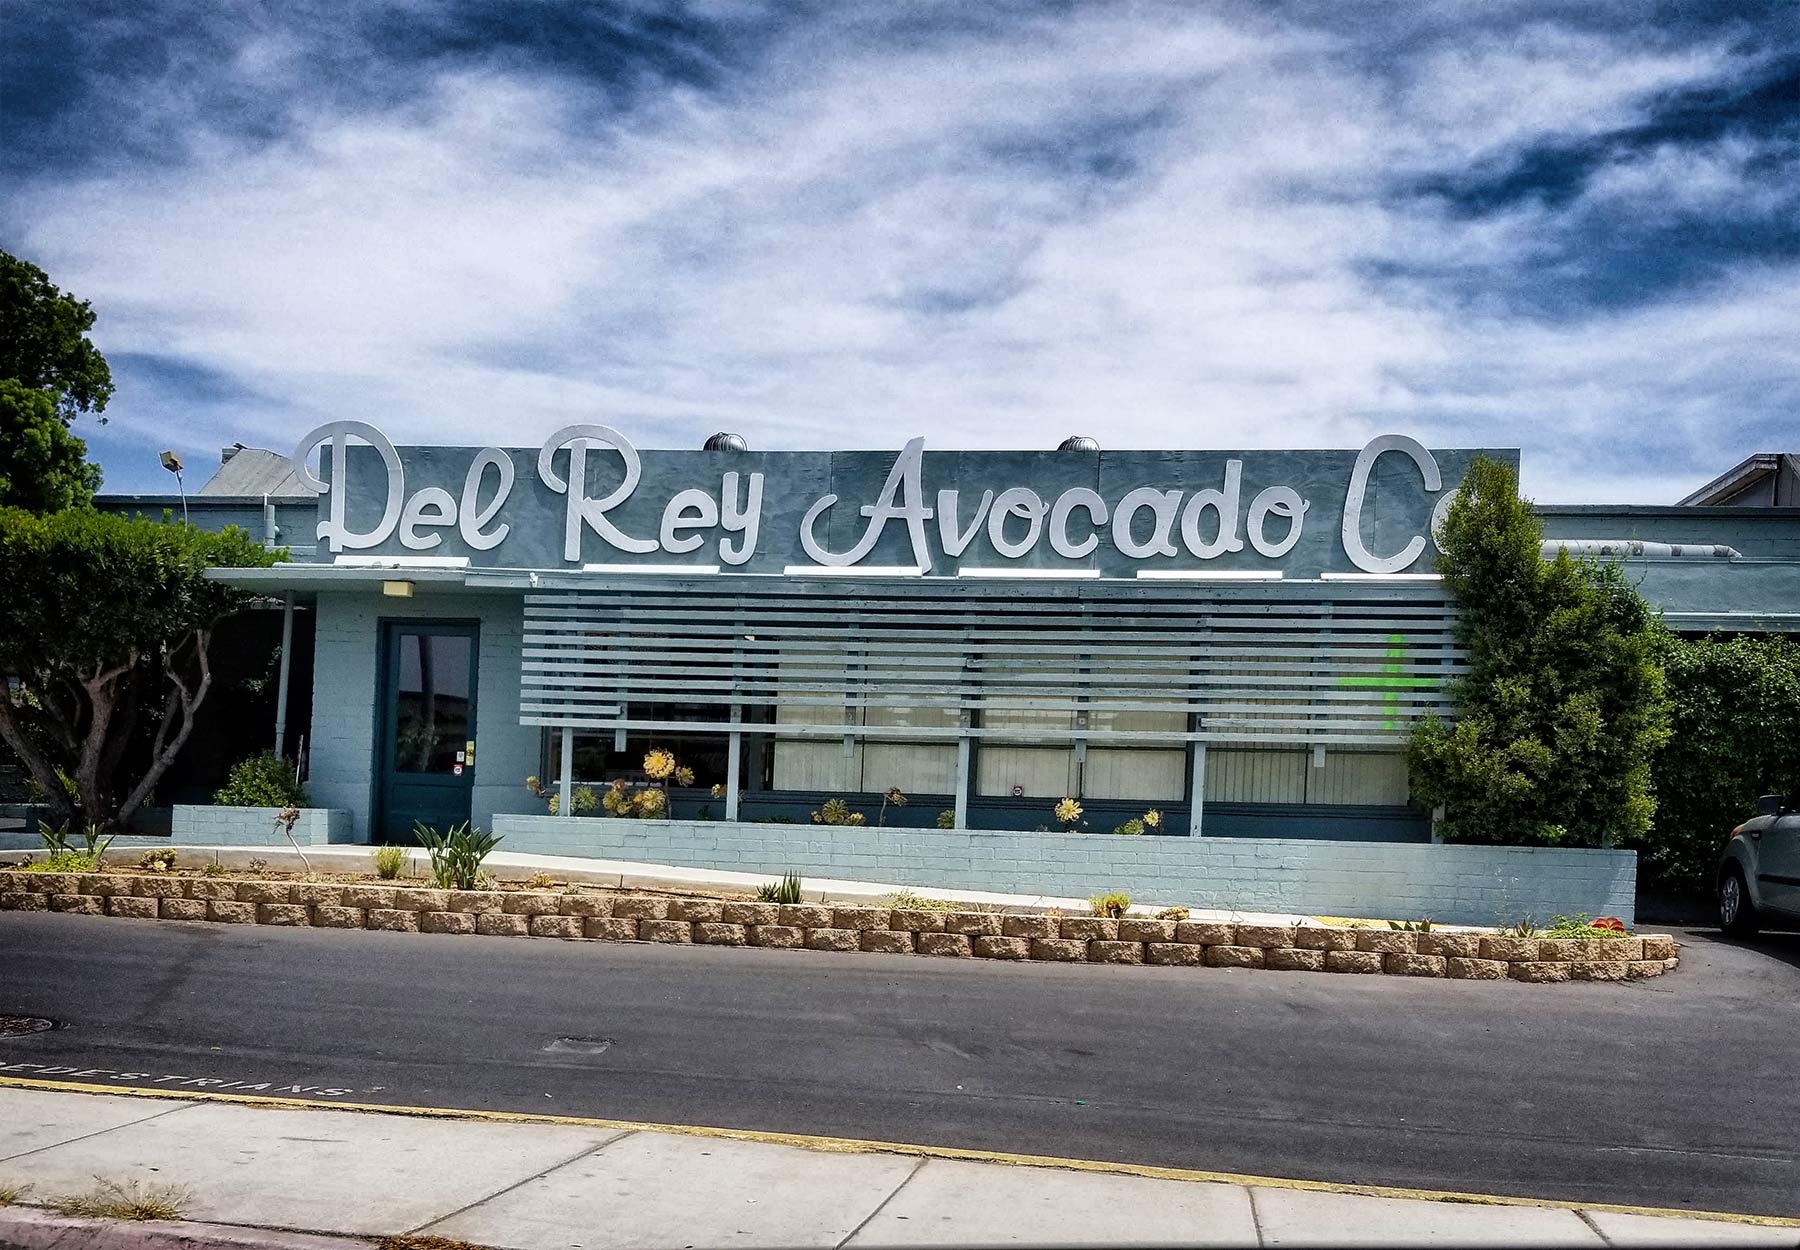 Del Rey Avocado ©2018 by bret wills